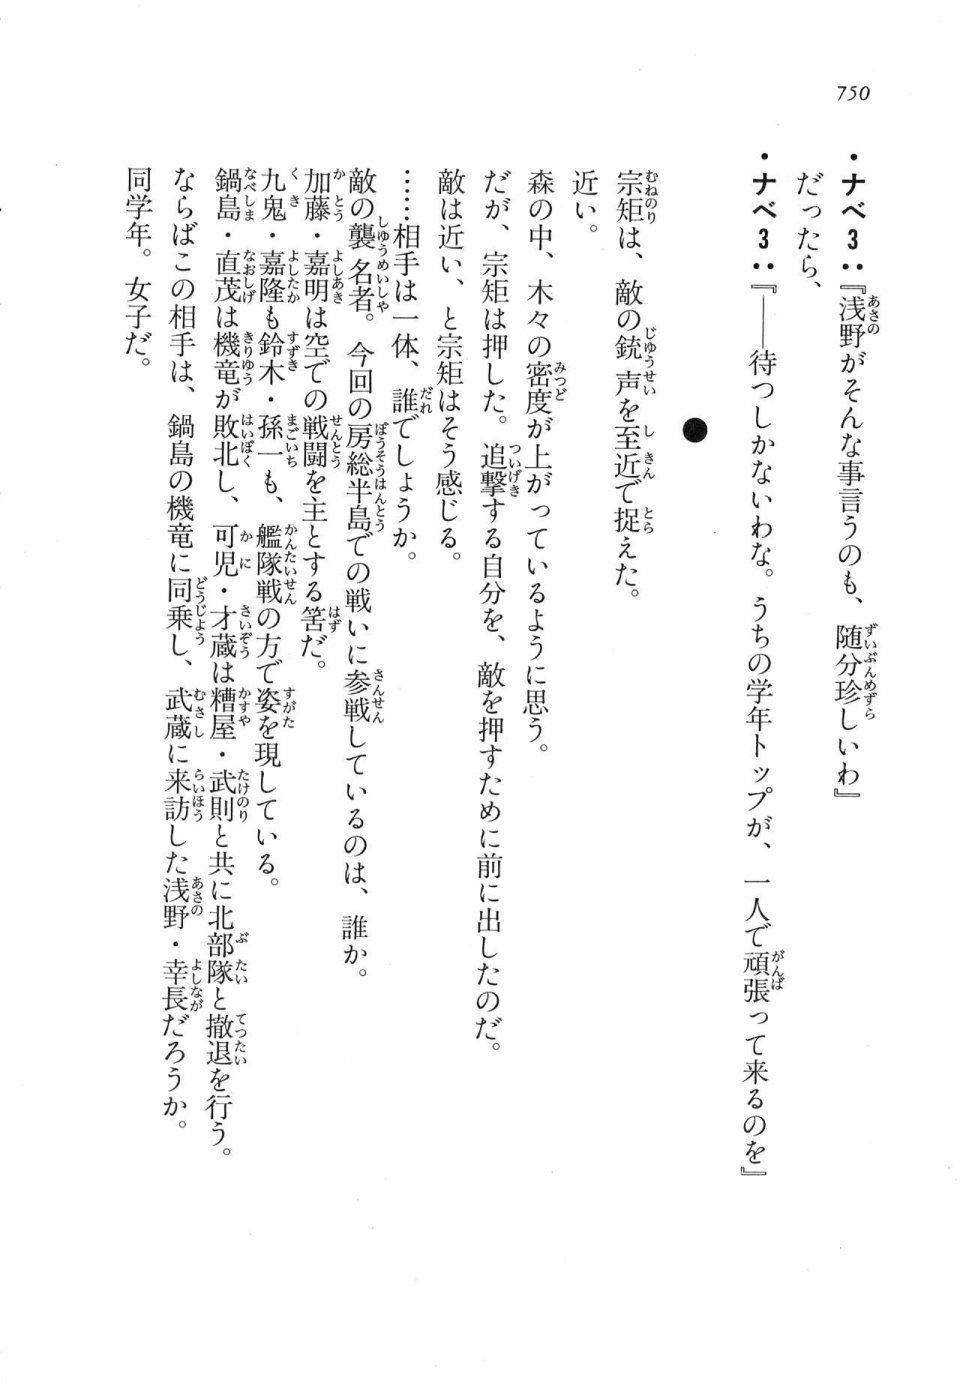 Kyoukai Senjou no Horizon LN Vol 17(7B) - Photo #752